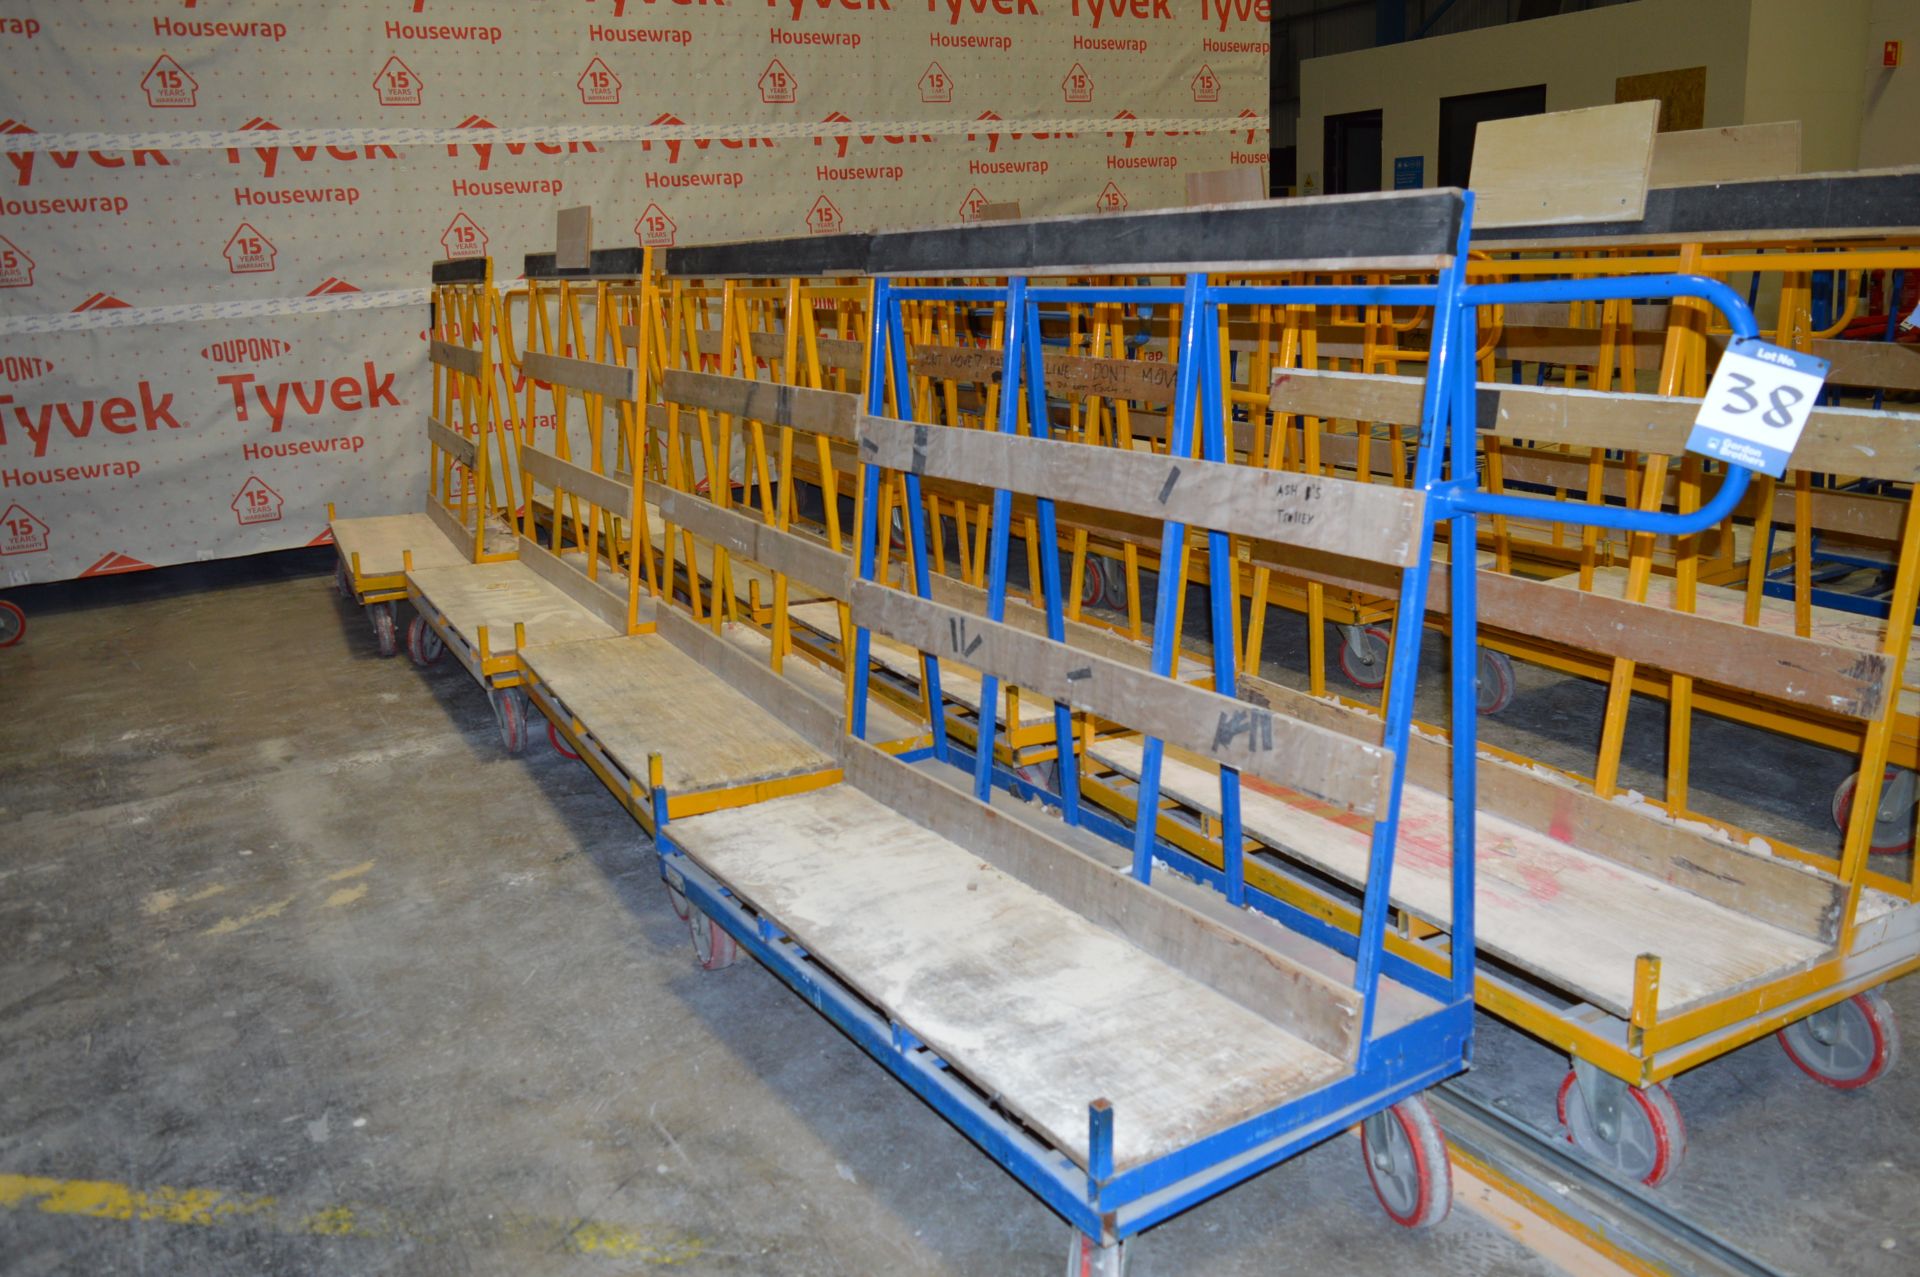 4x (no.) single sided workshop trolleys, each 1500mm x 700mm x 1500mm high